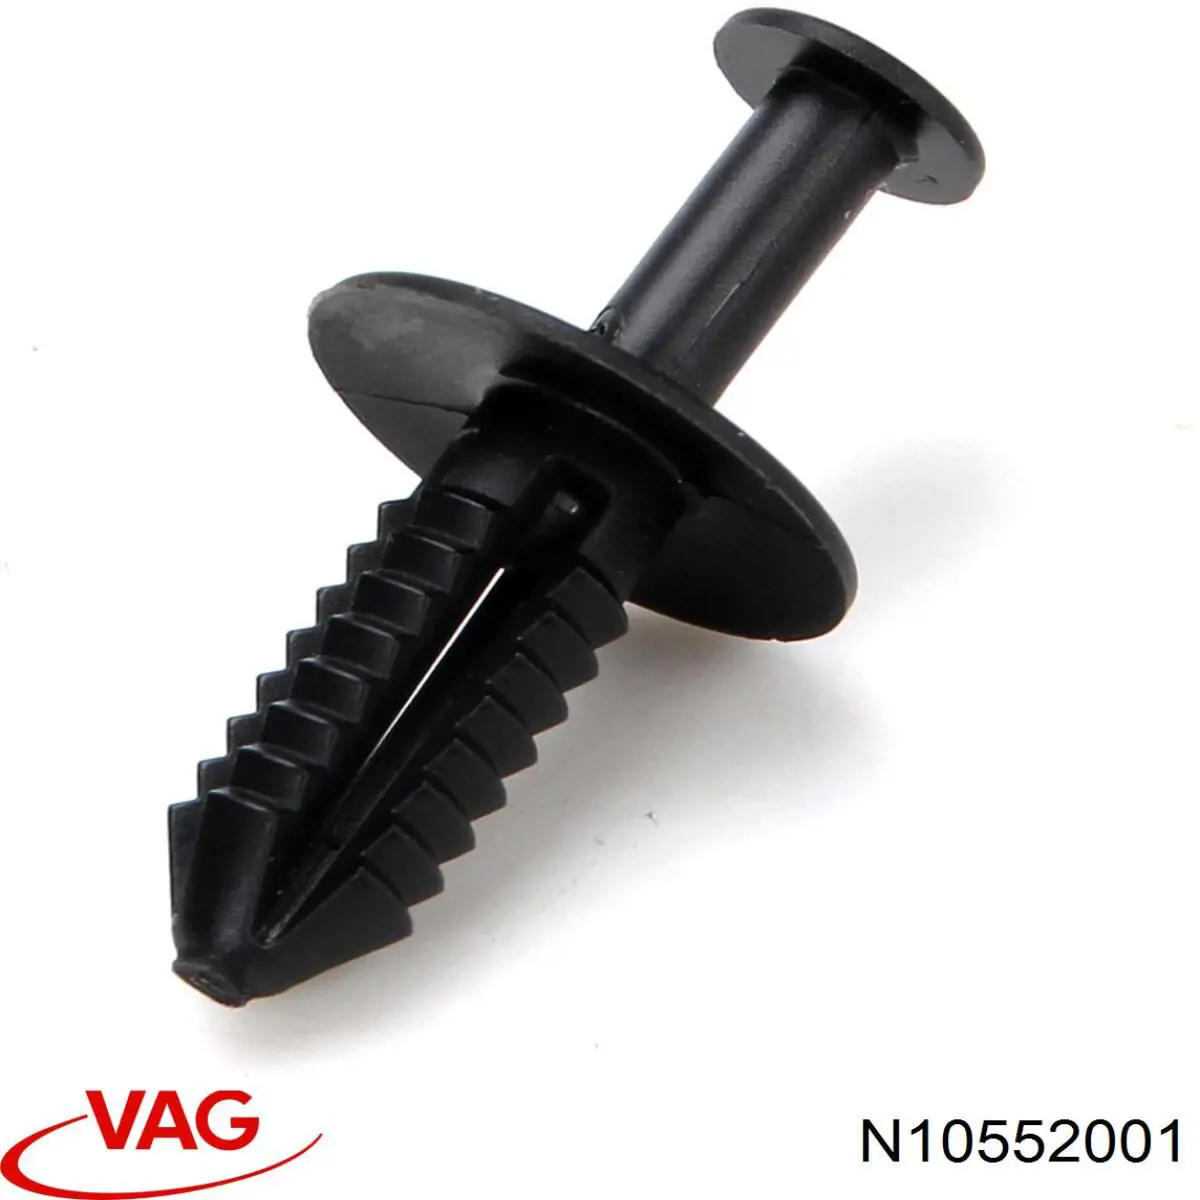 N10552001 VAG clips de fijación de pasaruedas de aleta delantera